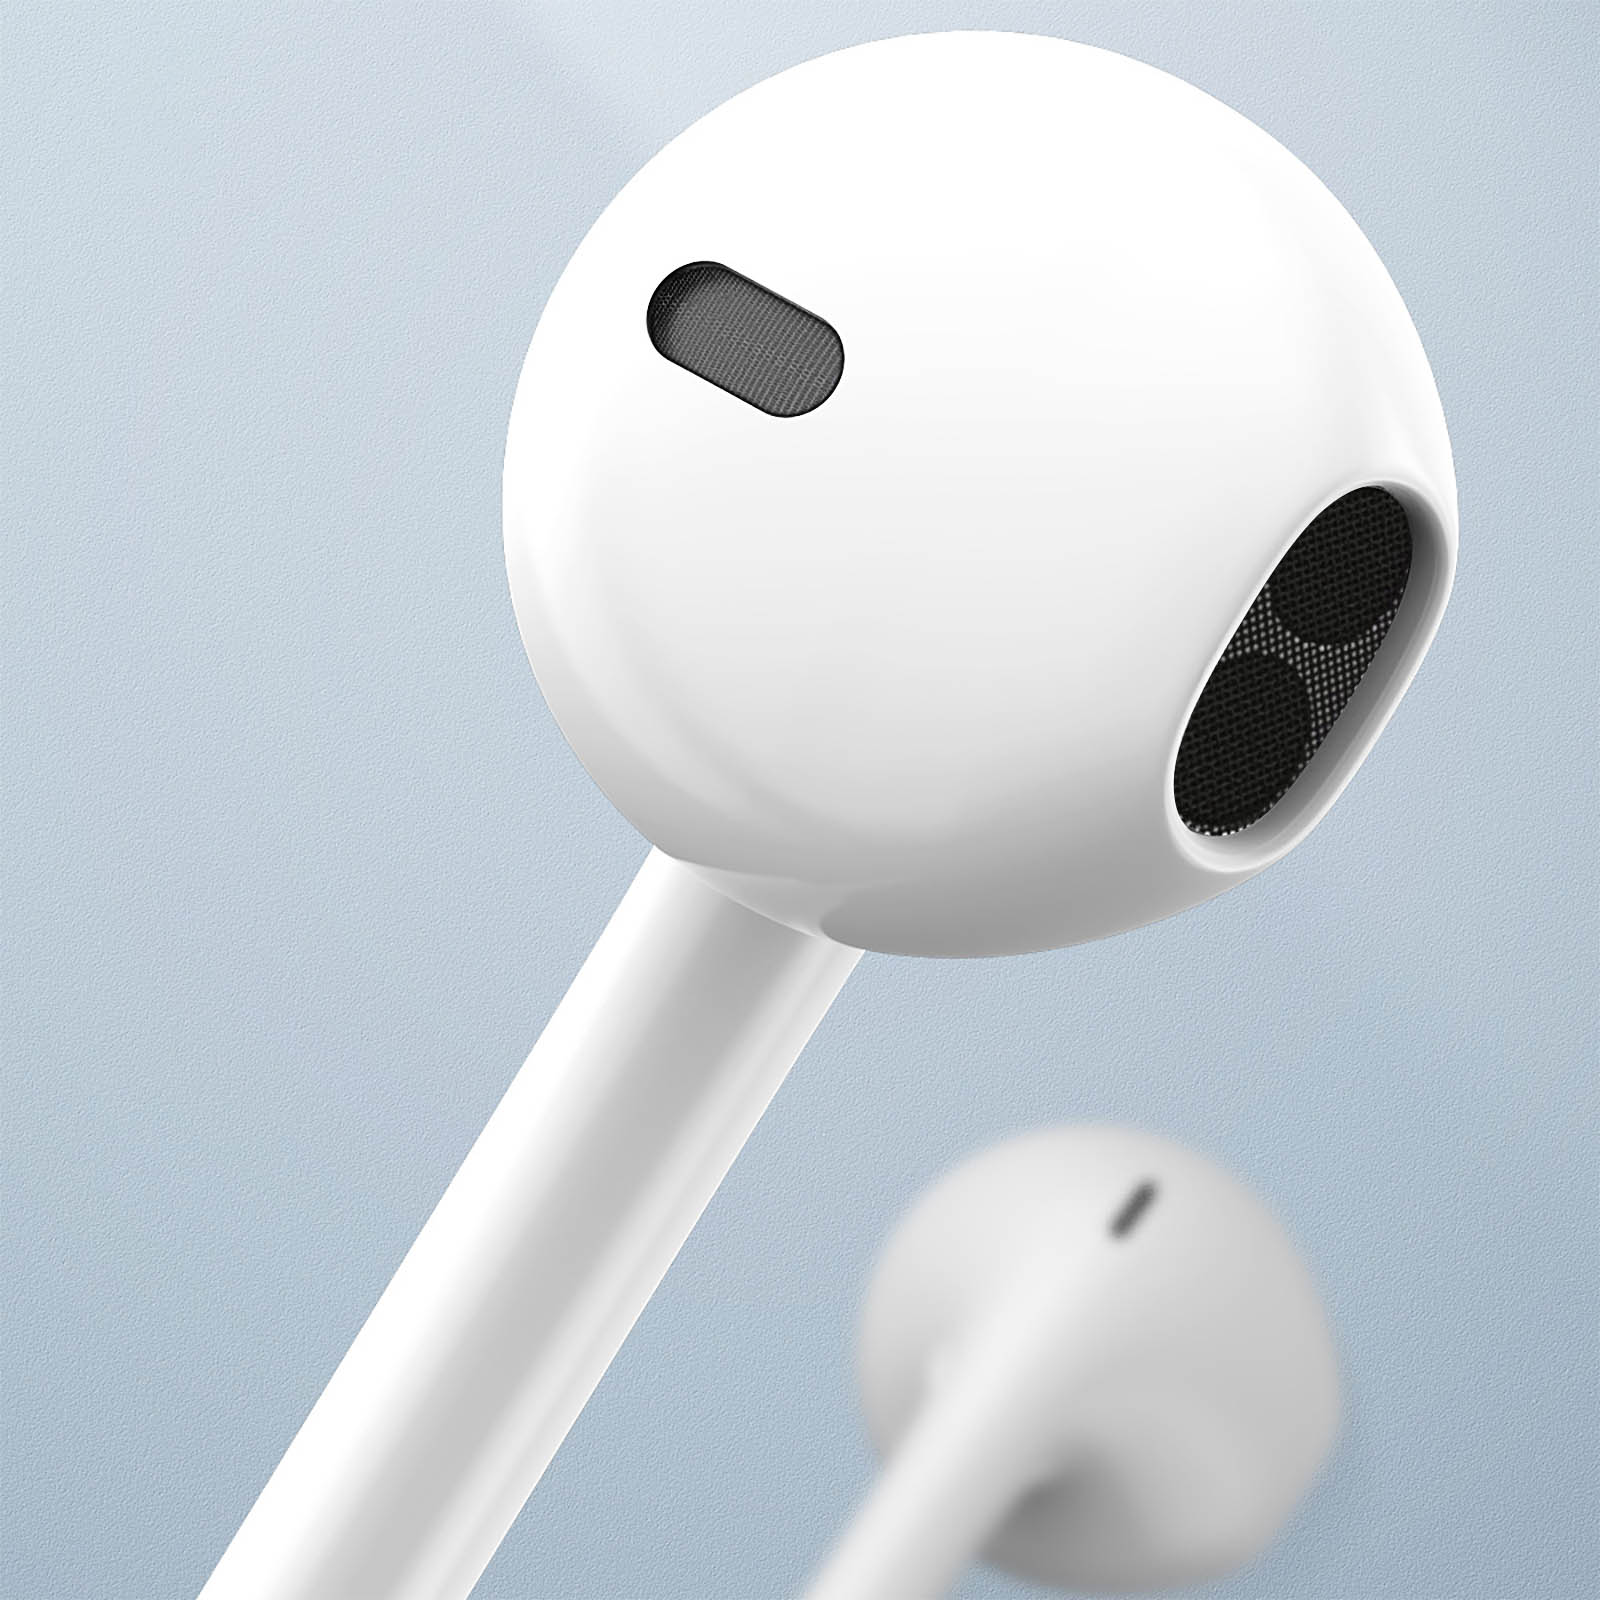 Apple Écouteurs intra-auriculaires EarPods USB-C Connector Blanc